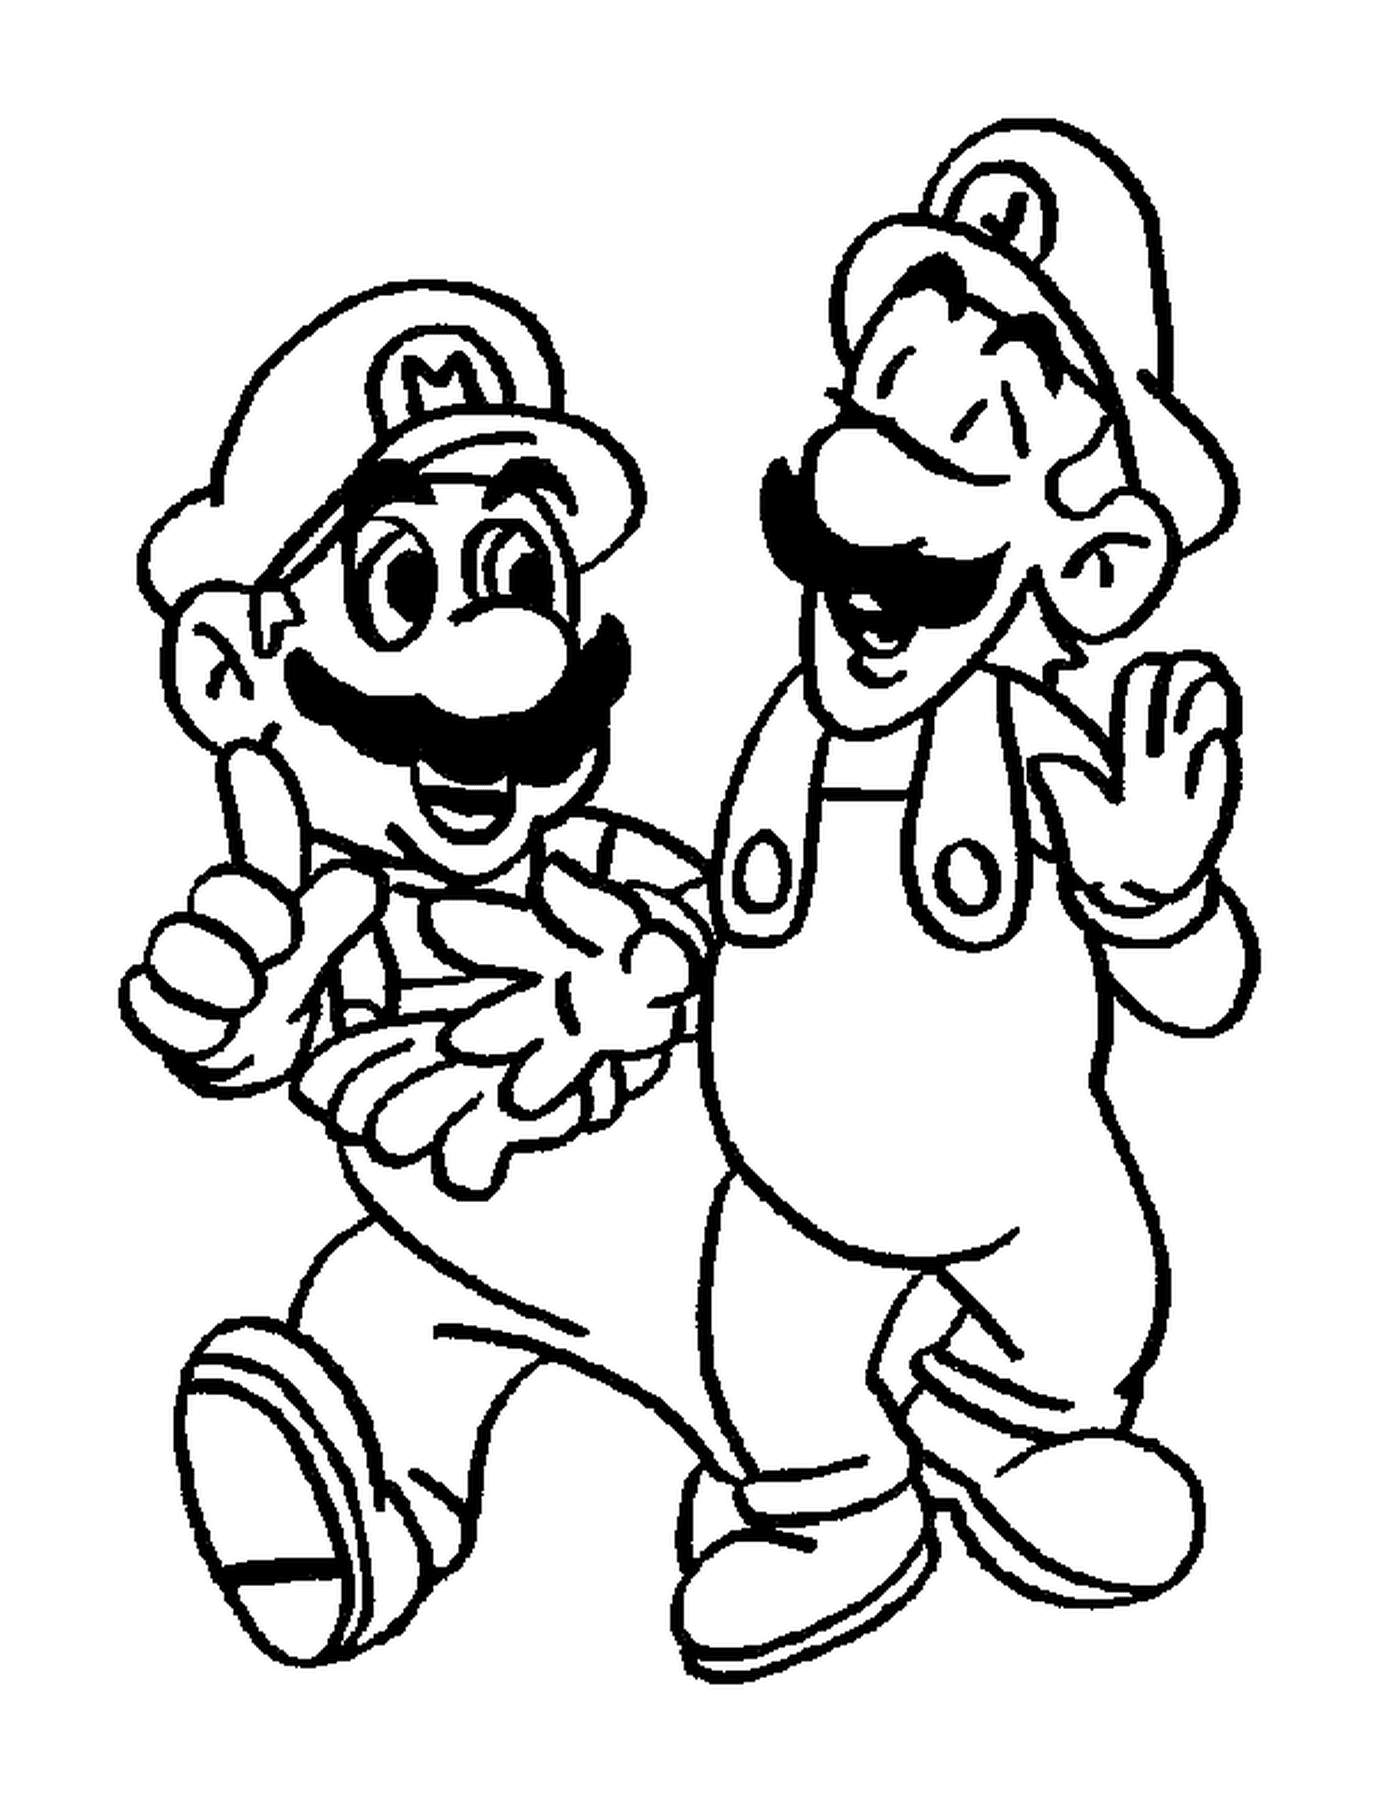  Luigi y Mario, dos hermanos inseparables 